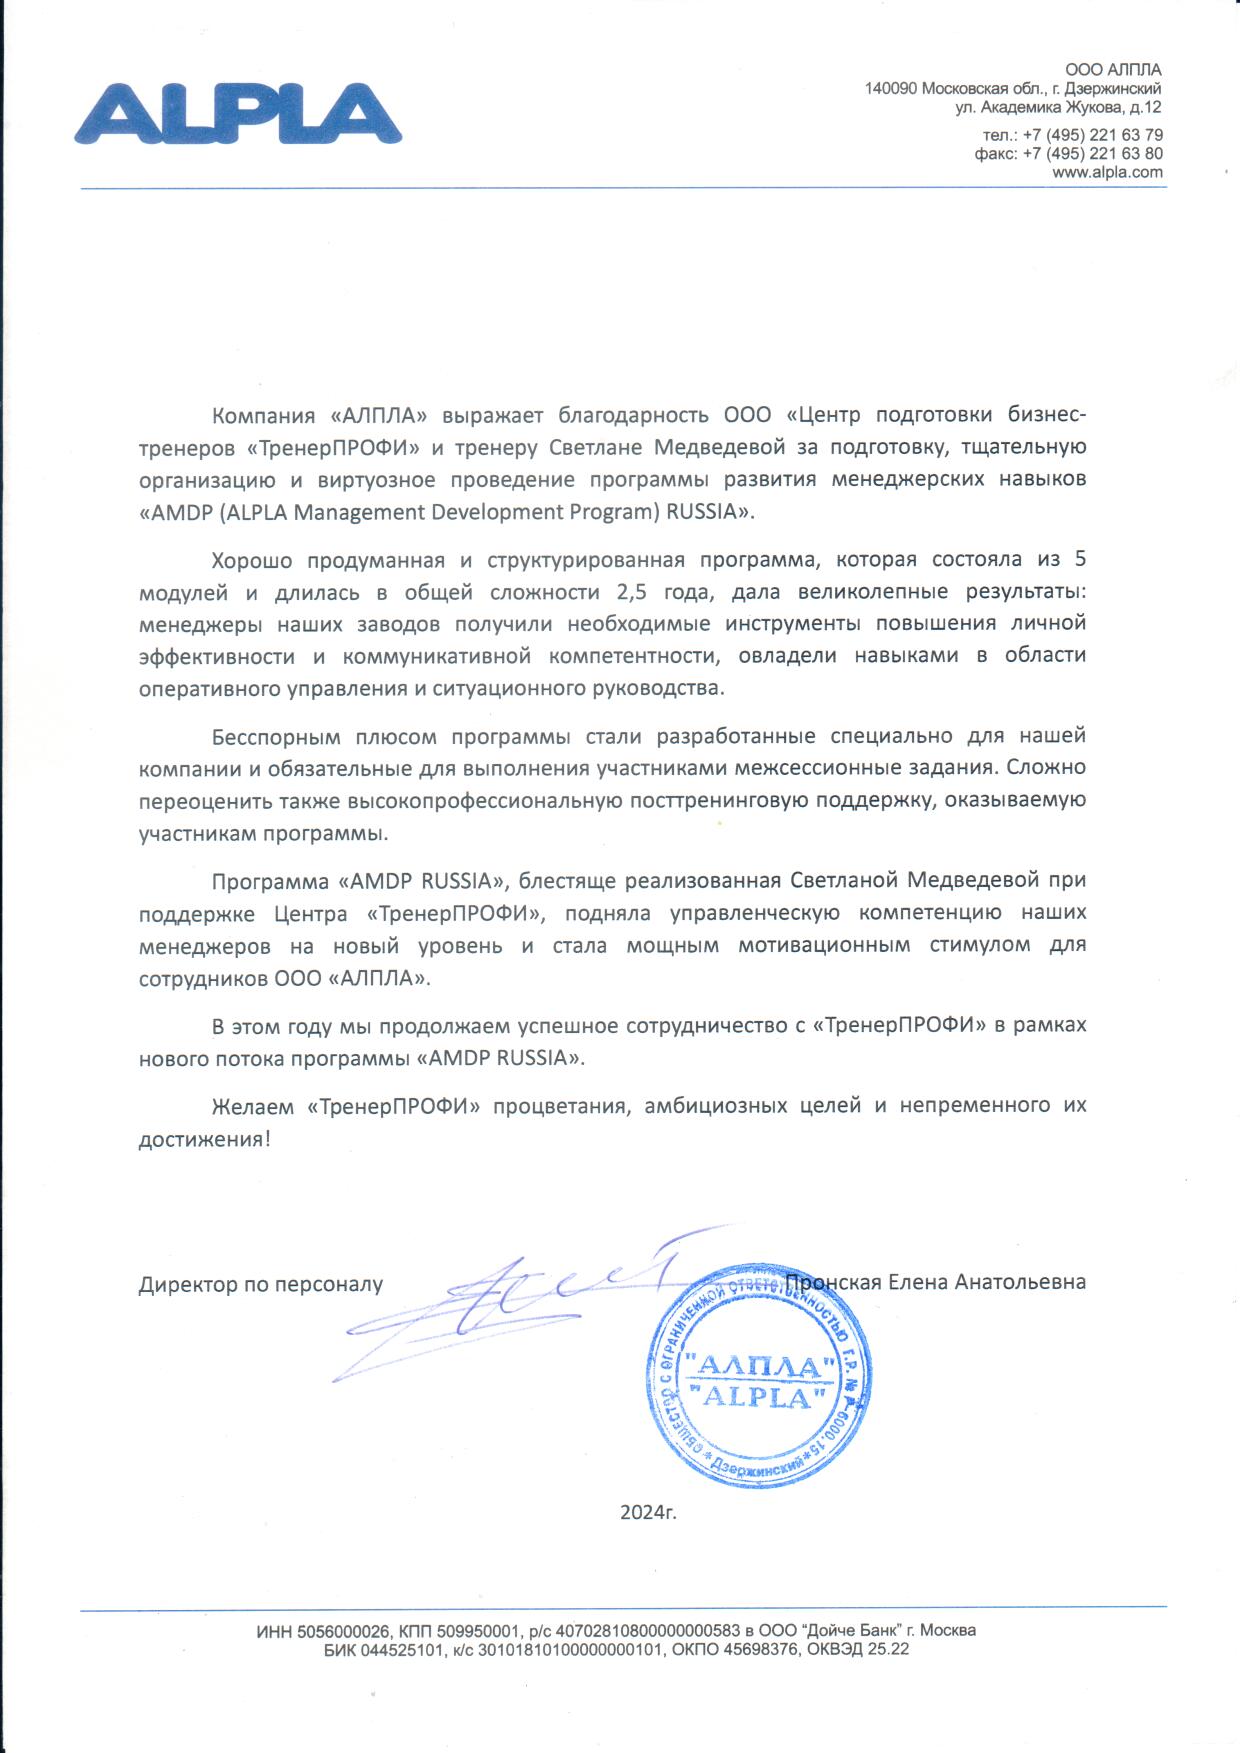 Благодарственное письмо АЛПЛА Светлана Медведева pdf.io